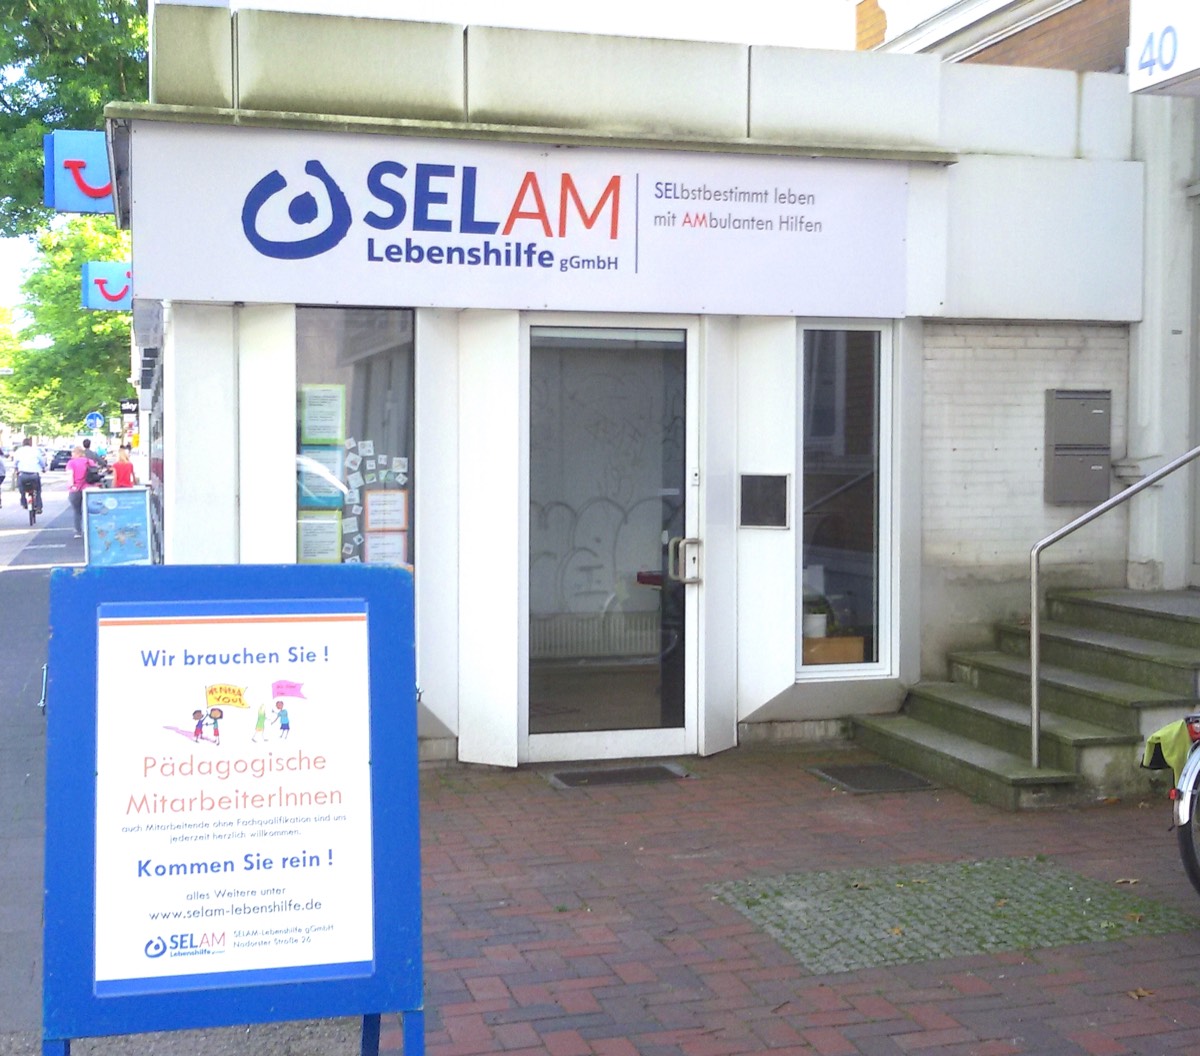 Auf dem 2. Bild sieht man das Beratungsbüro der SELAM-Lebenshilfe, welches inzwischen umgezogen ist.